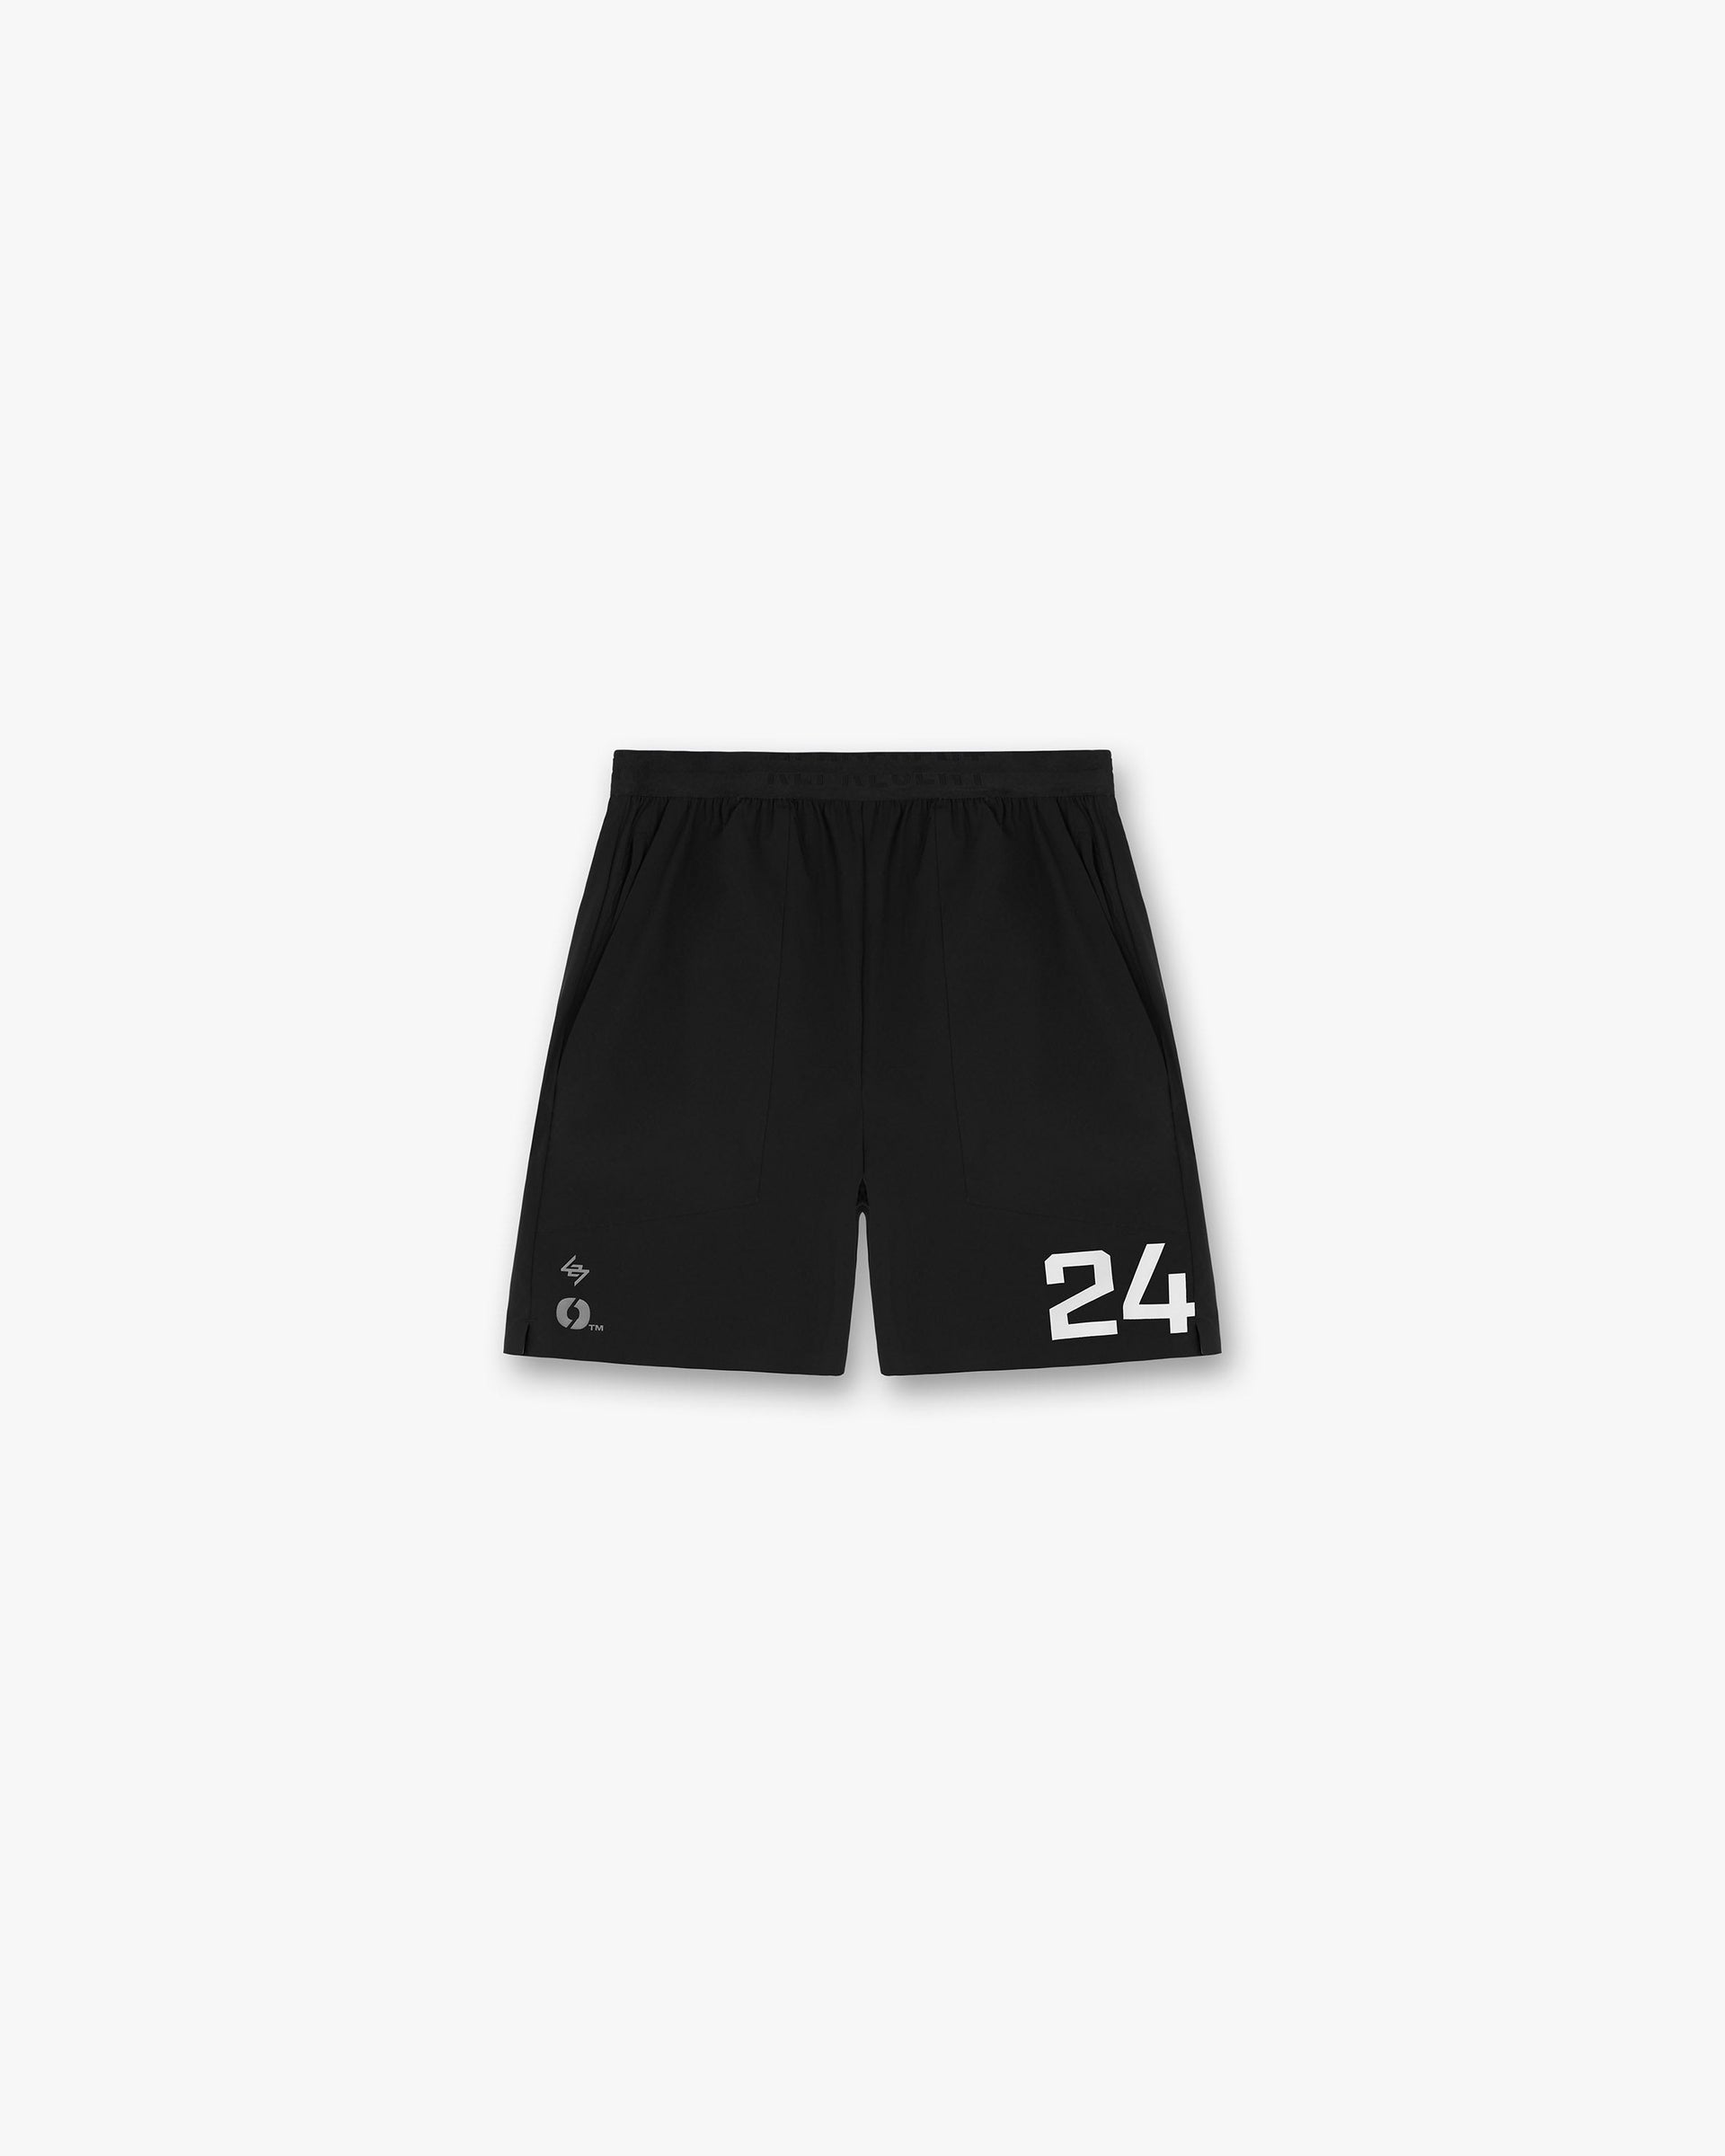 Team 247 Fused Short x Marchon | Black Shorts 247 | Represent Clo